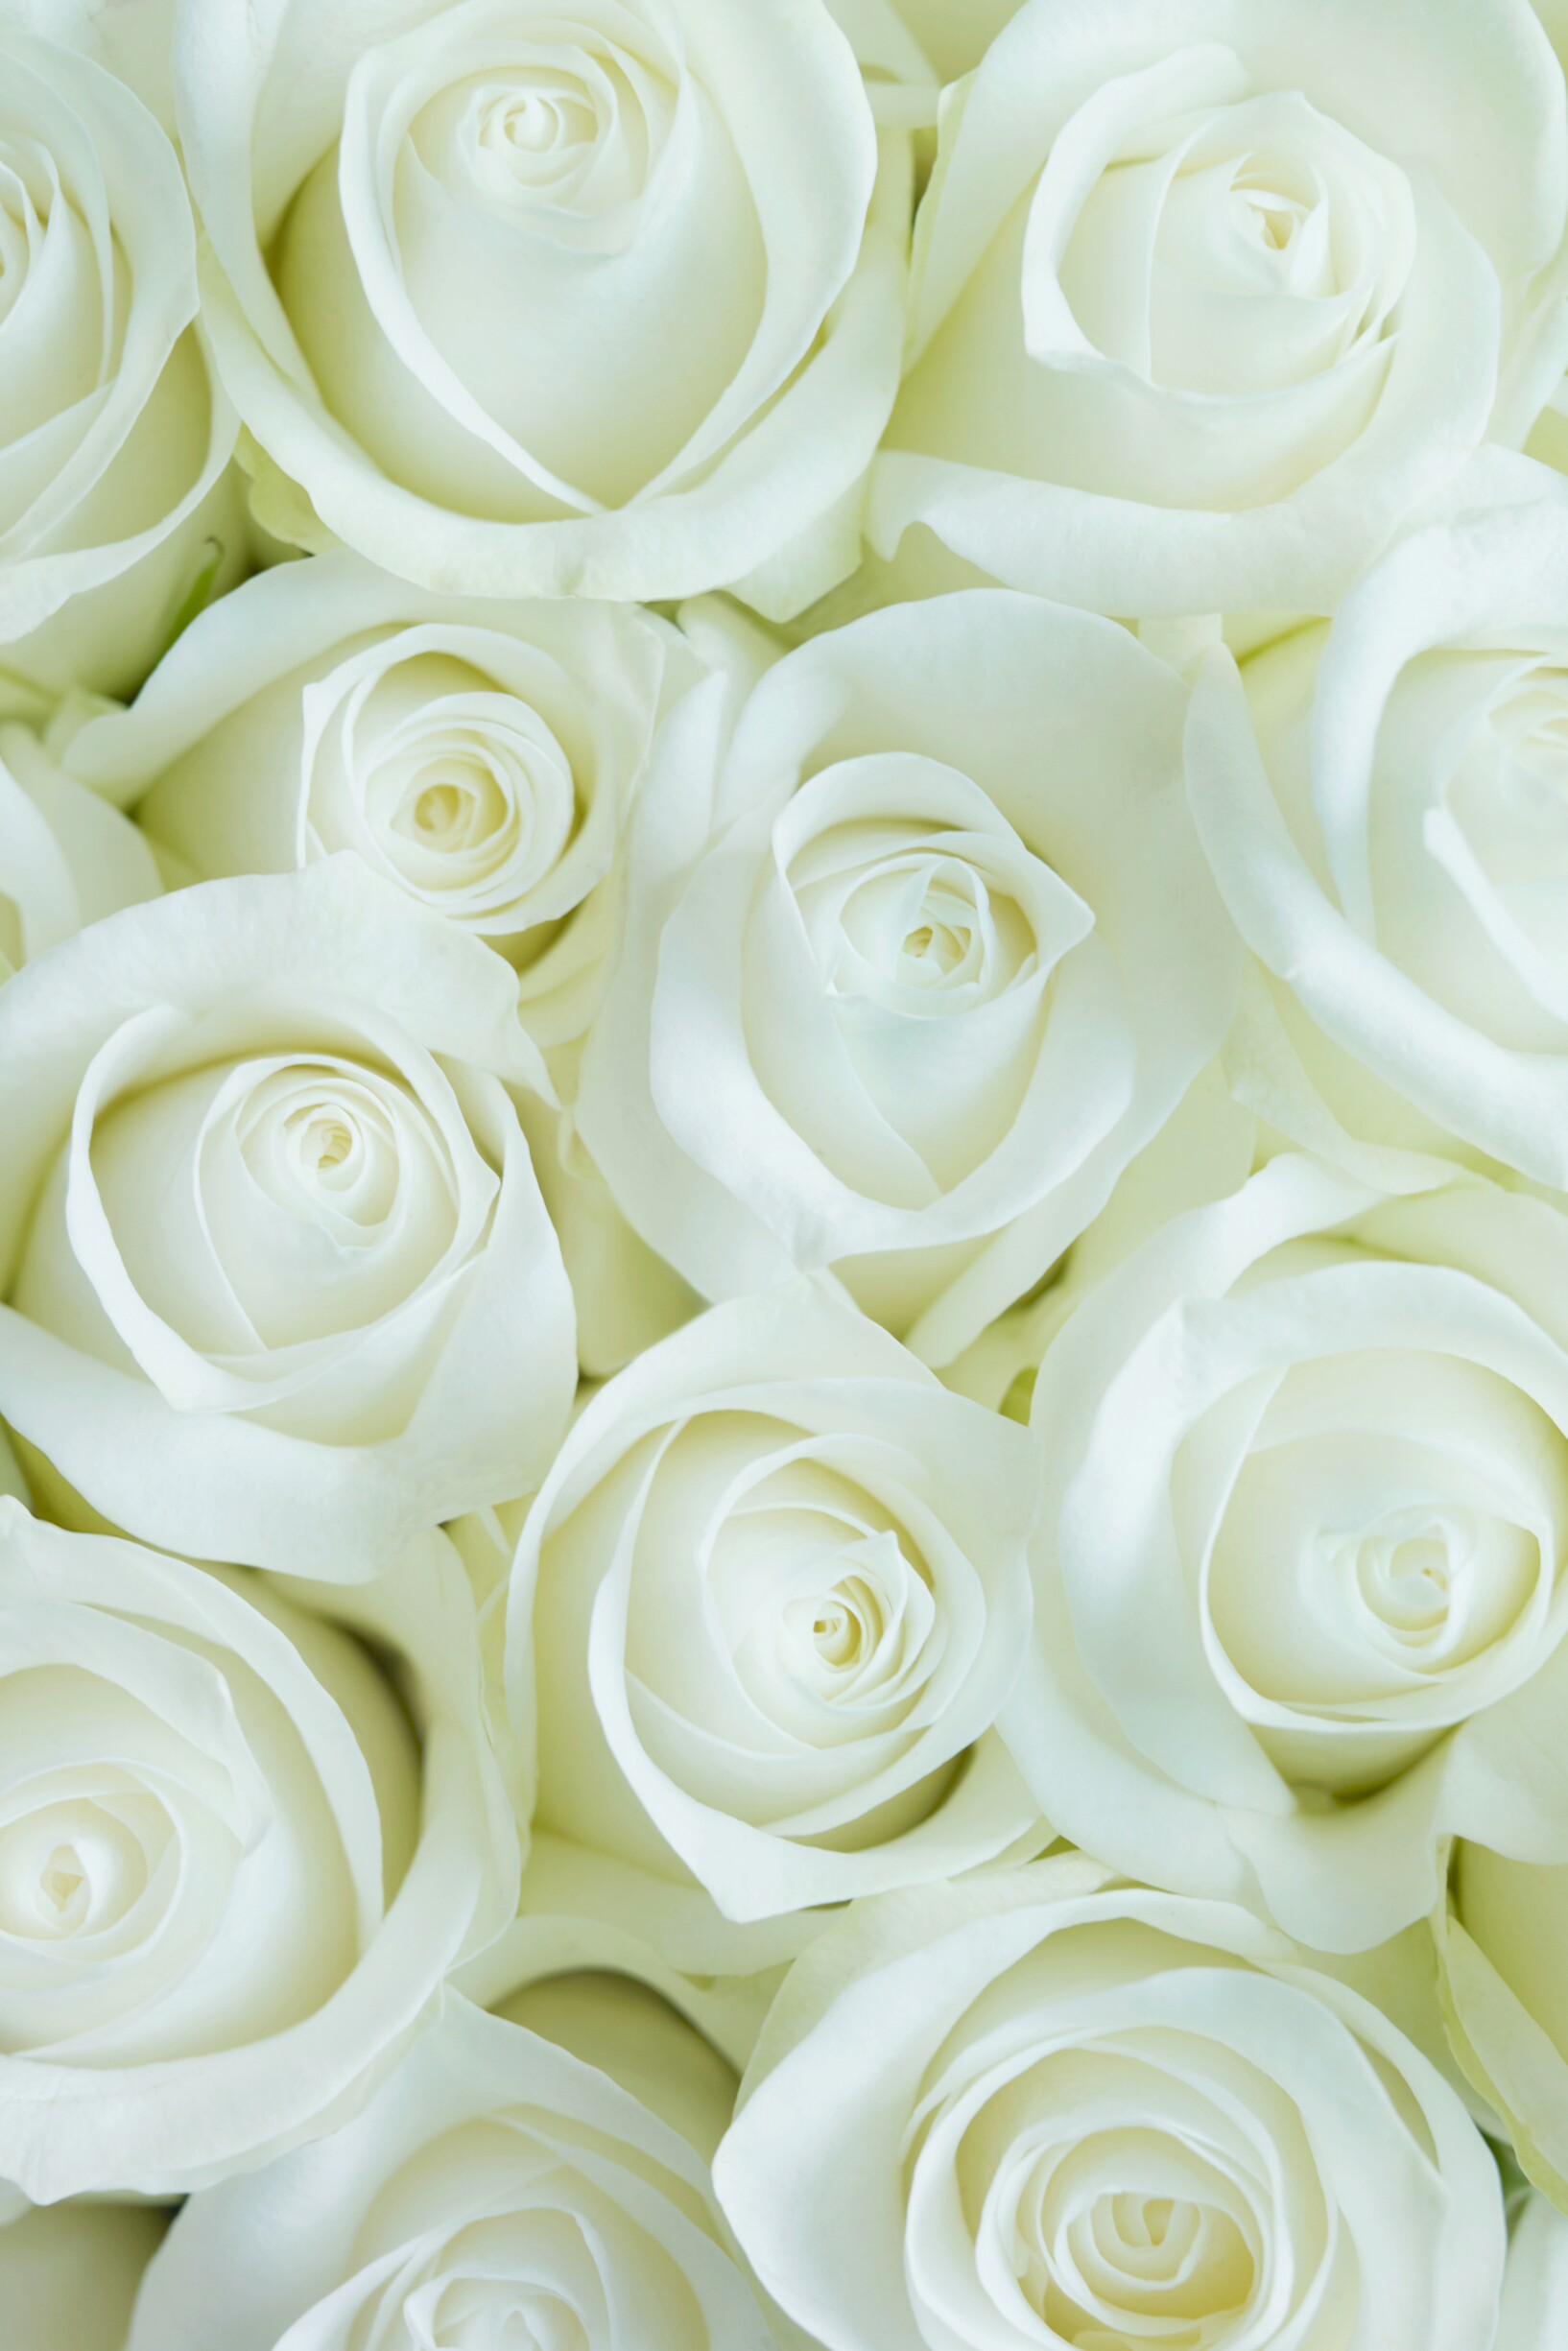 Wallpaper White Roses Flower For iPhone